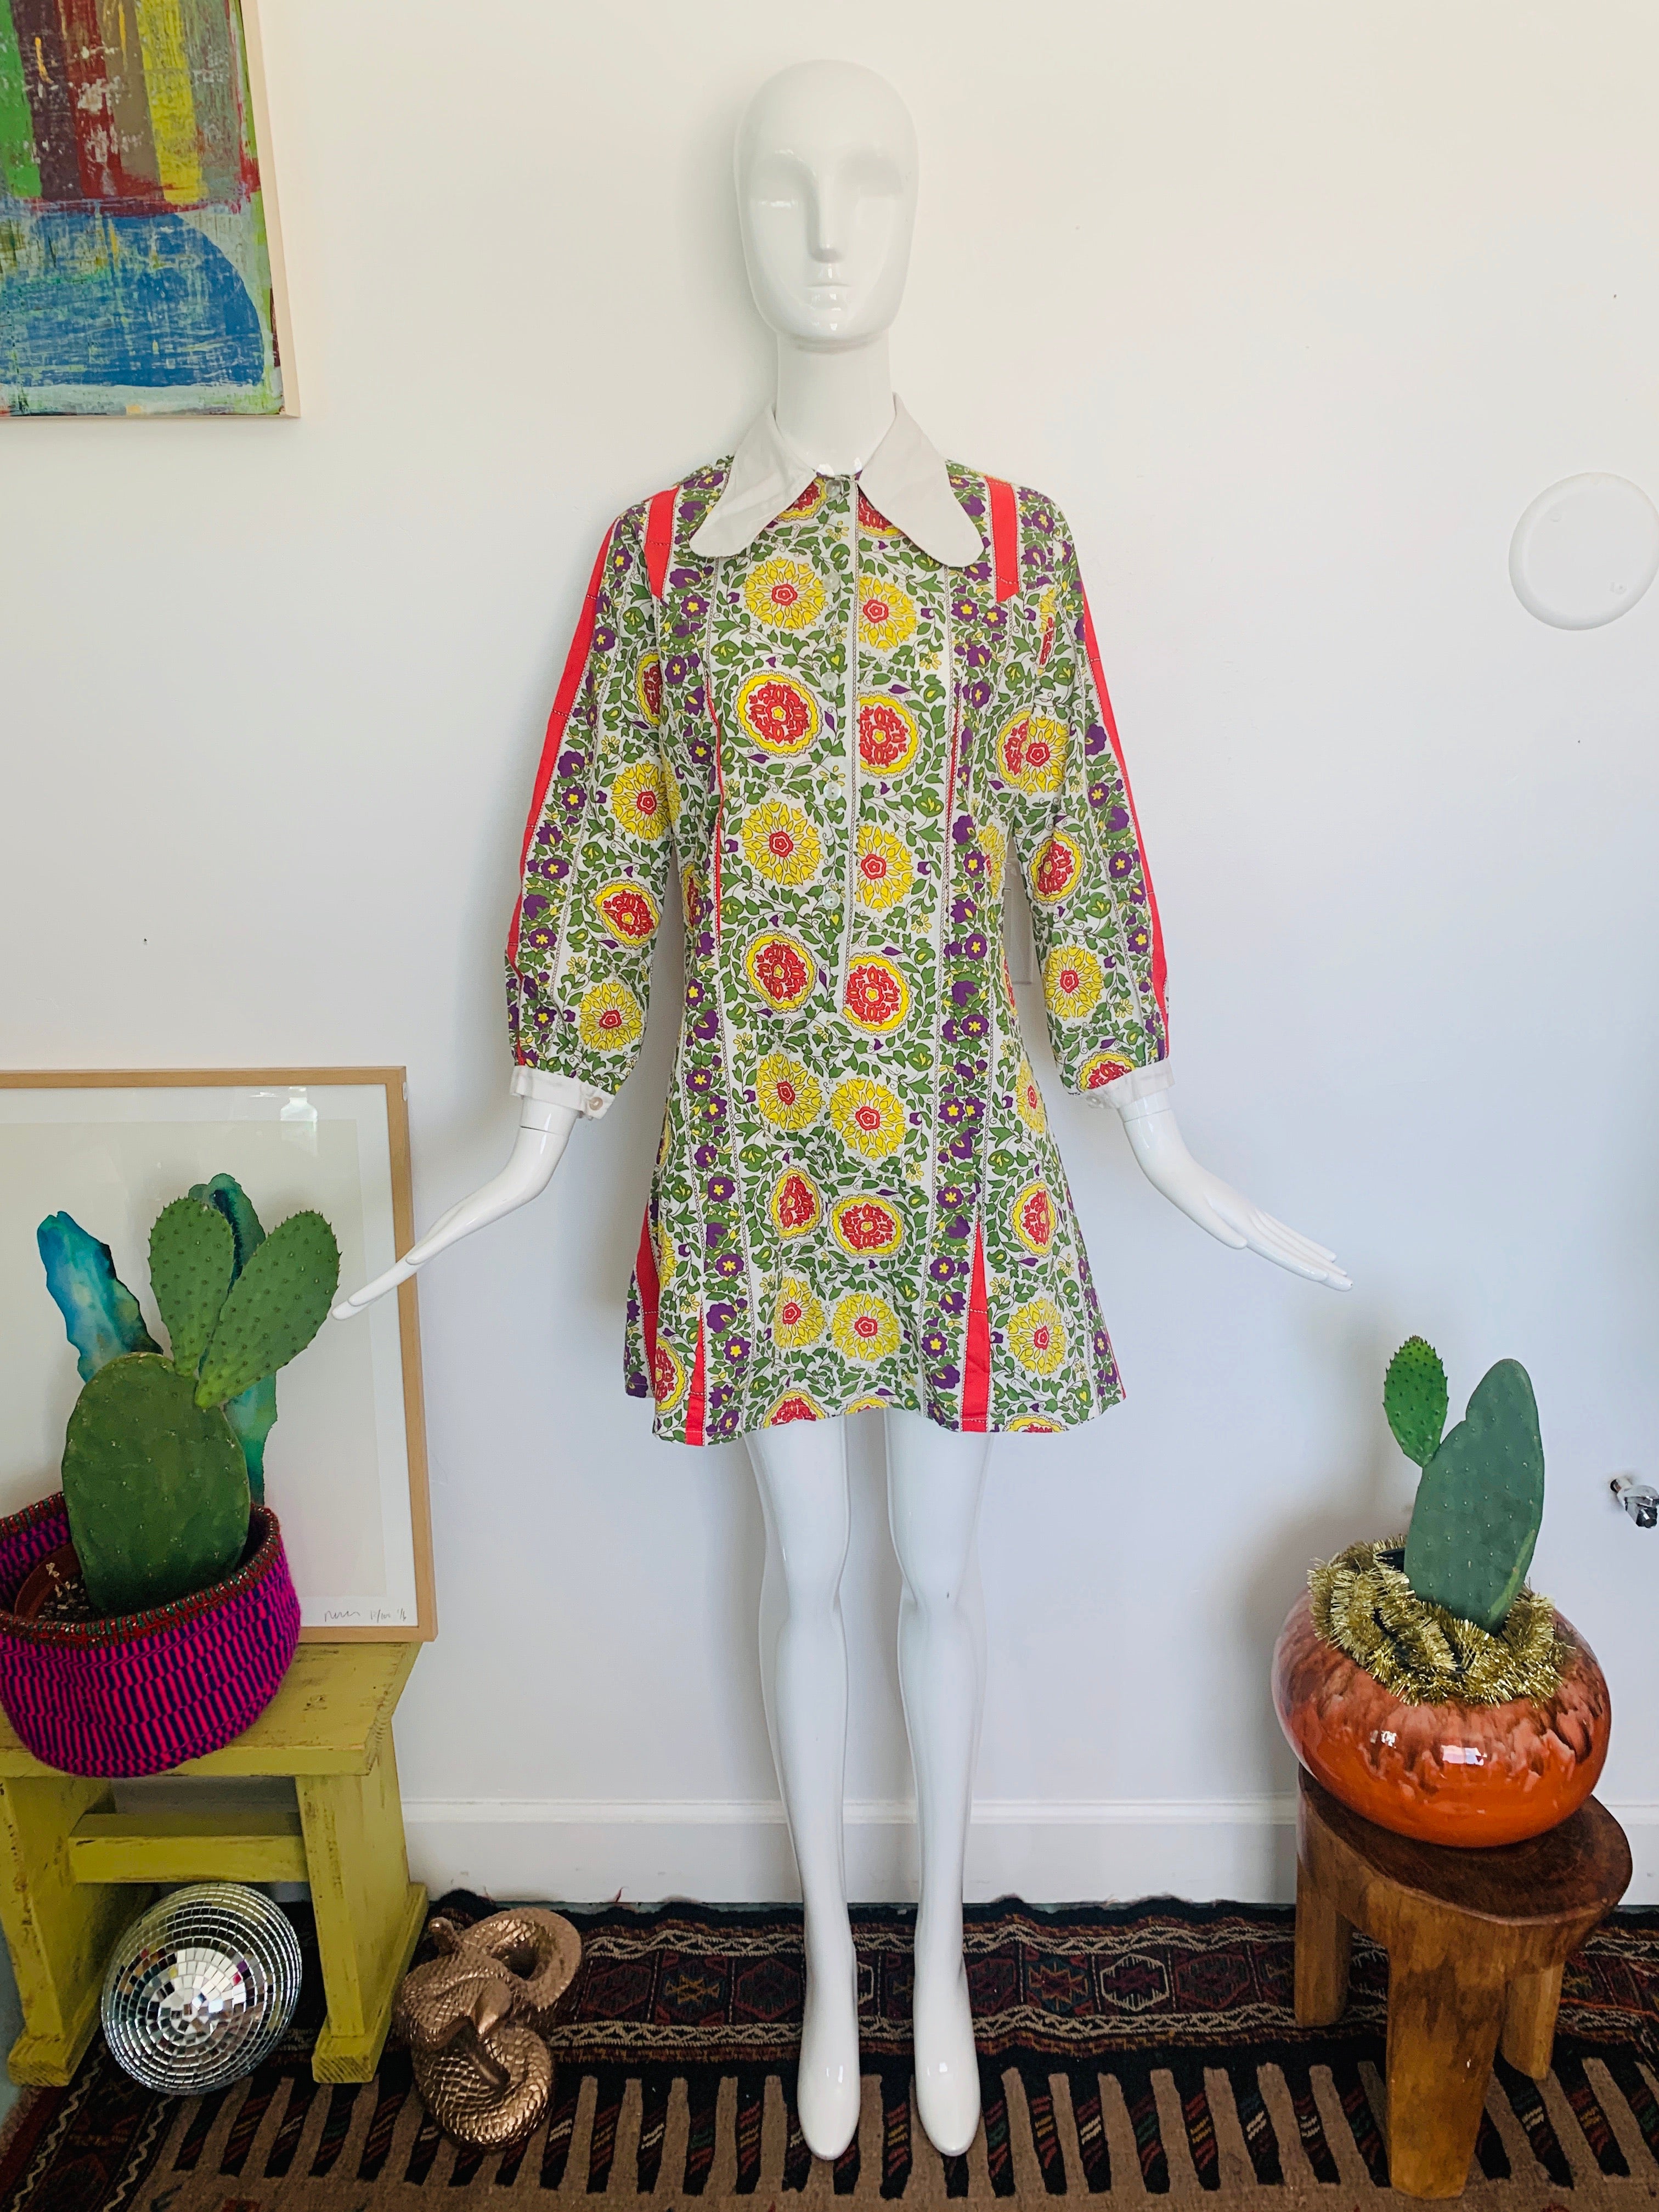 70s inspired dresses